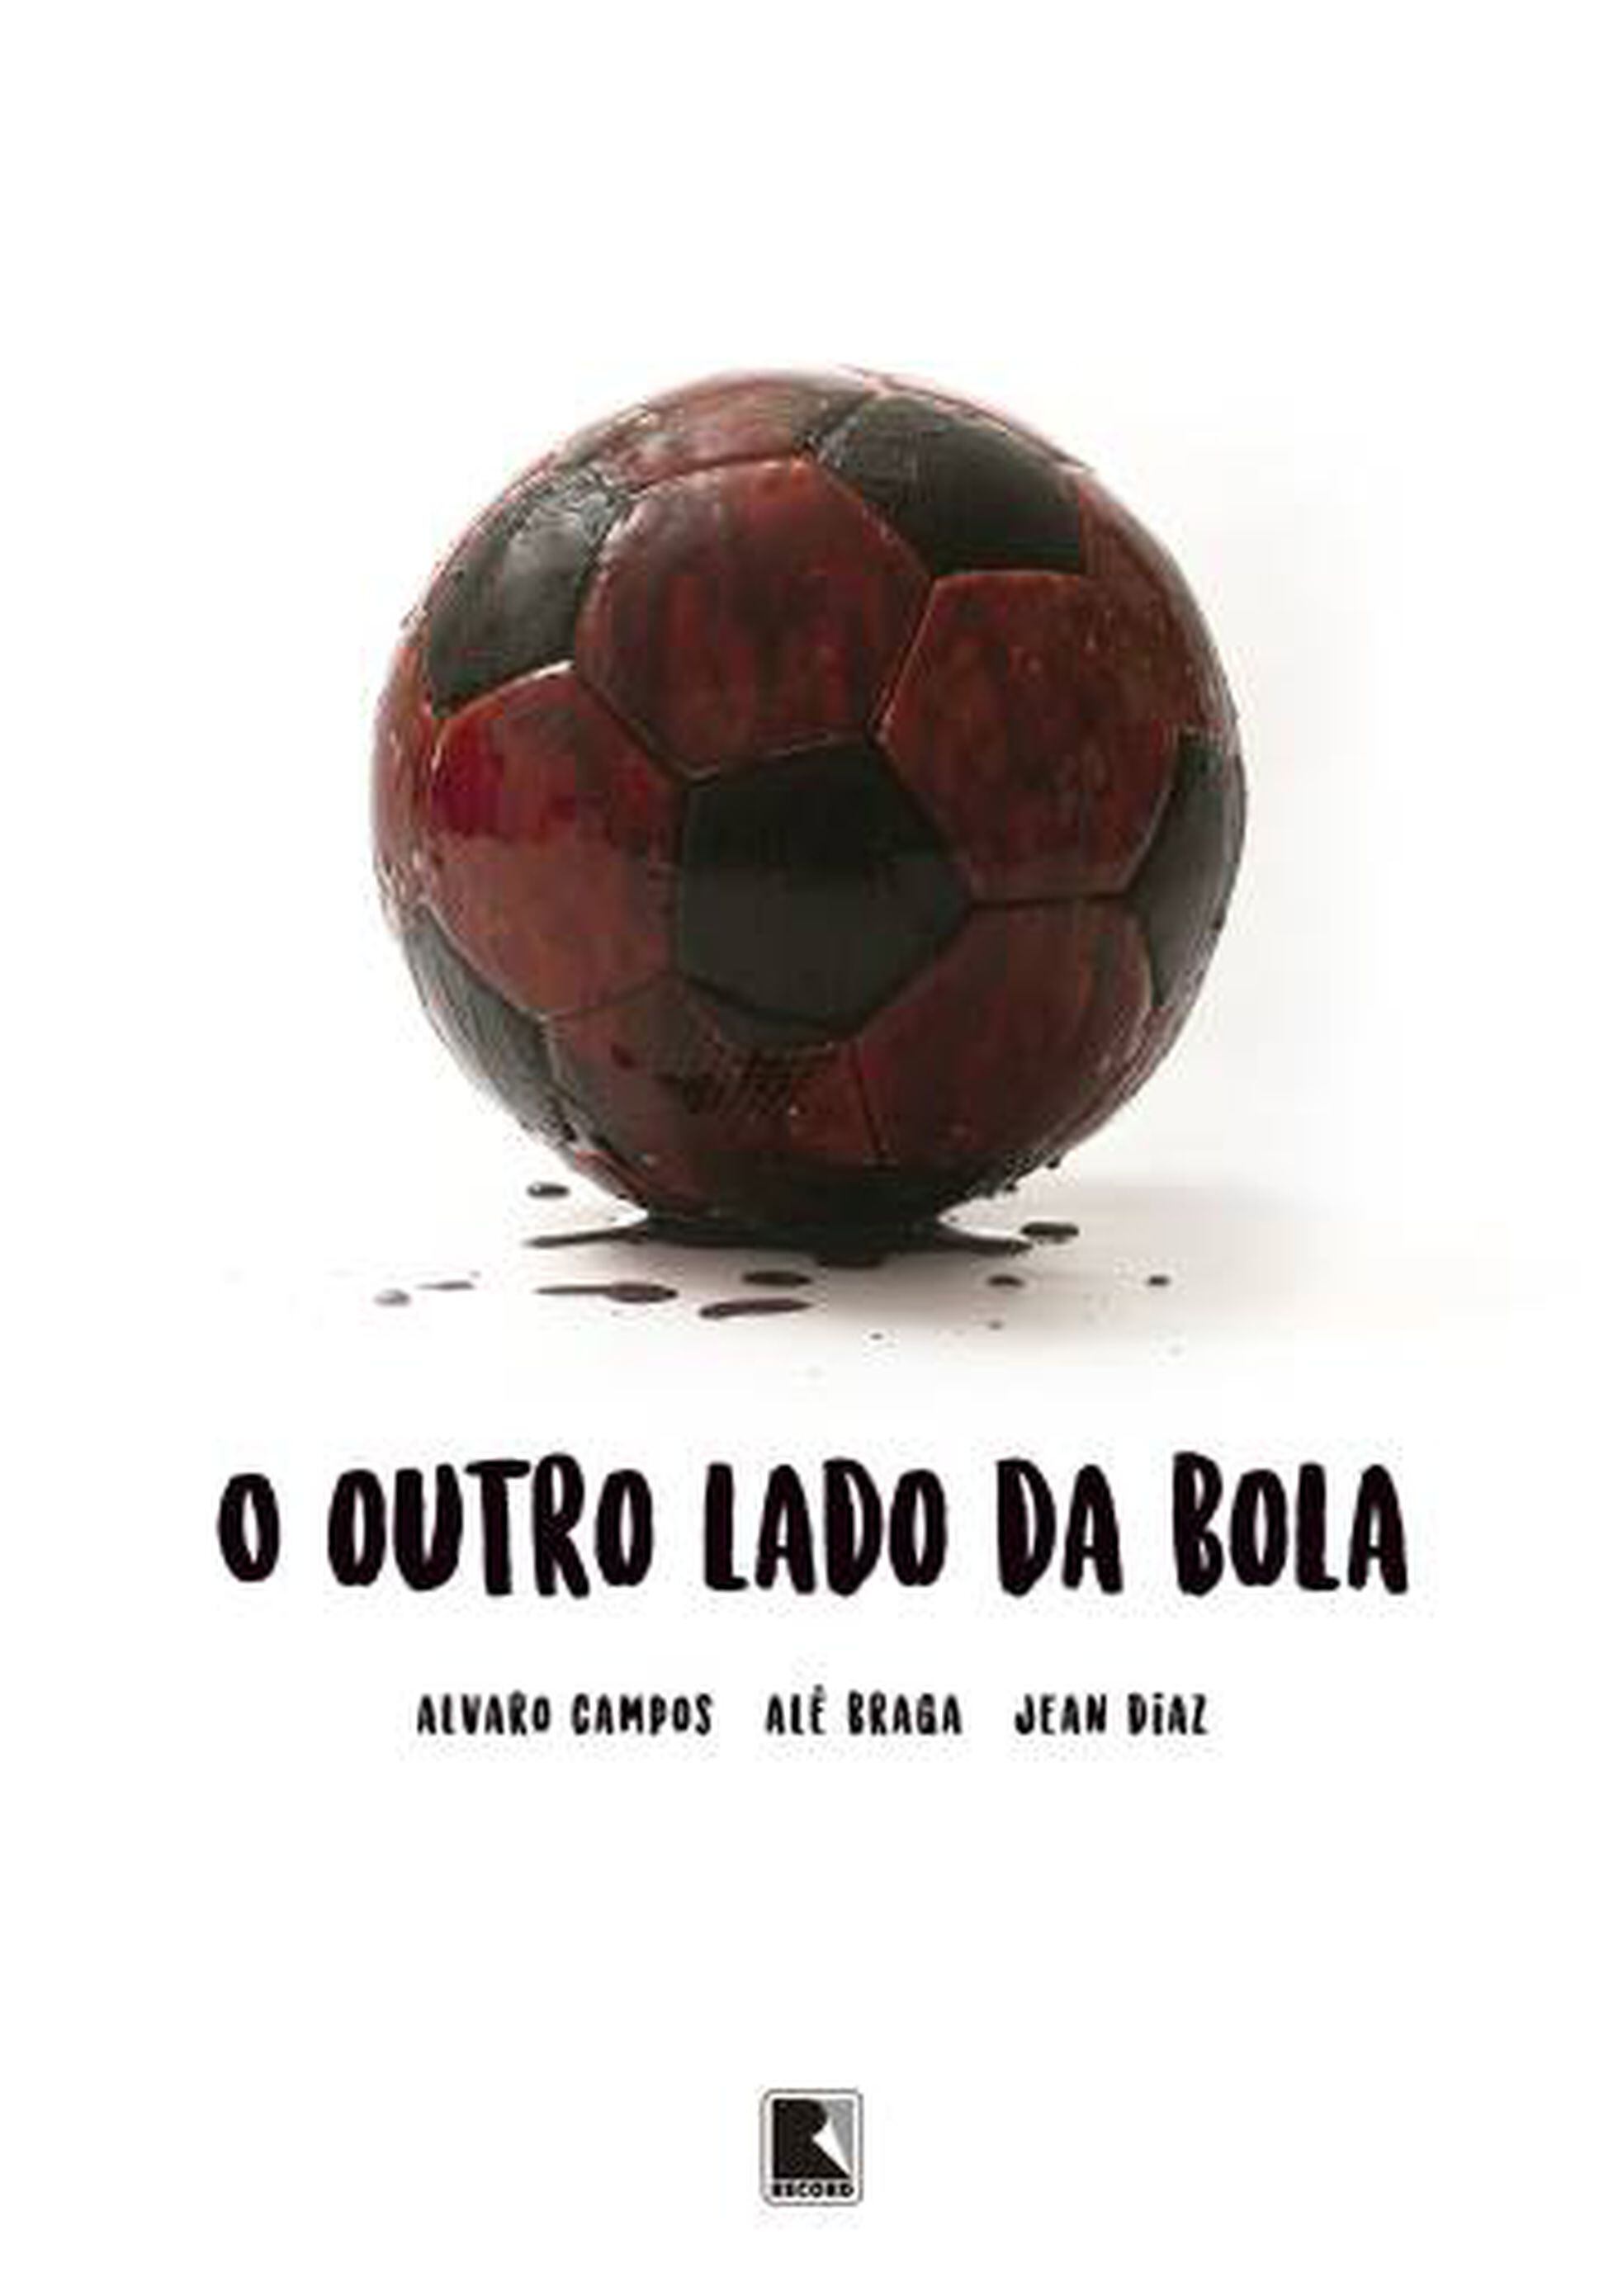 Livros de Futebol: desbravando a história do jogo no Brasil